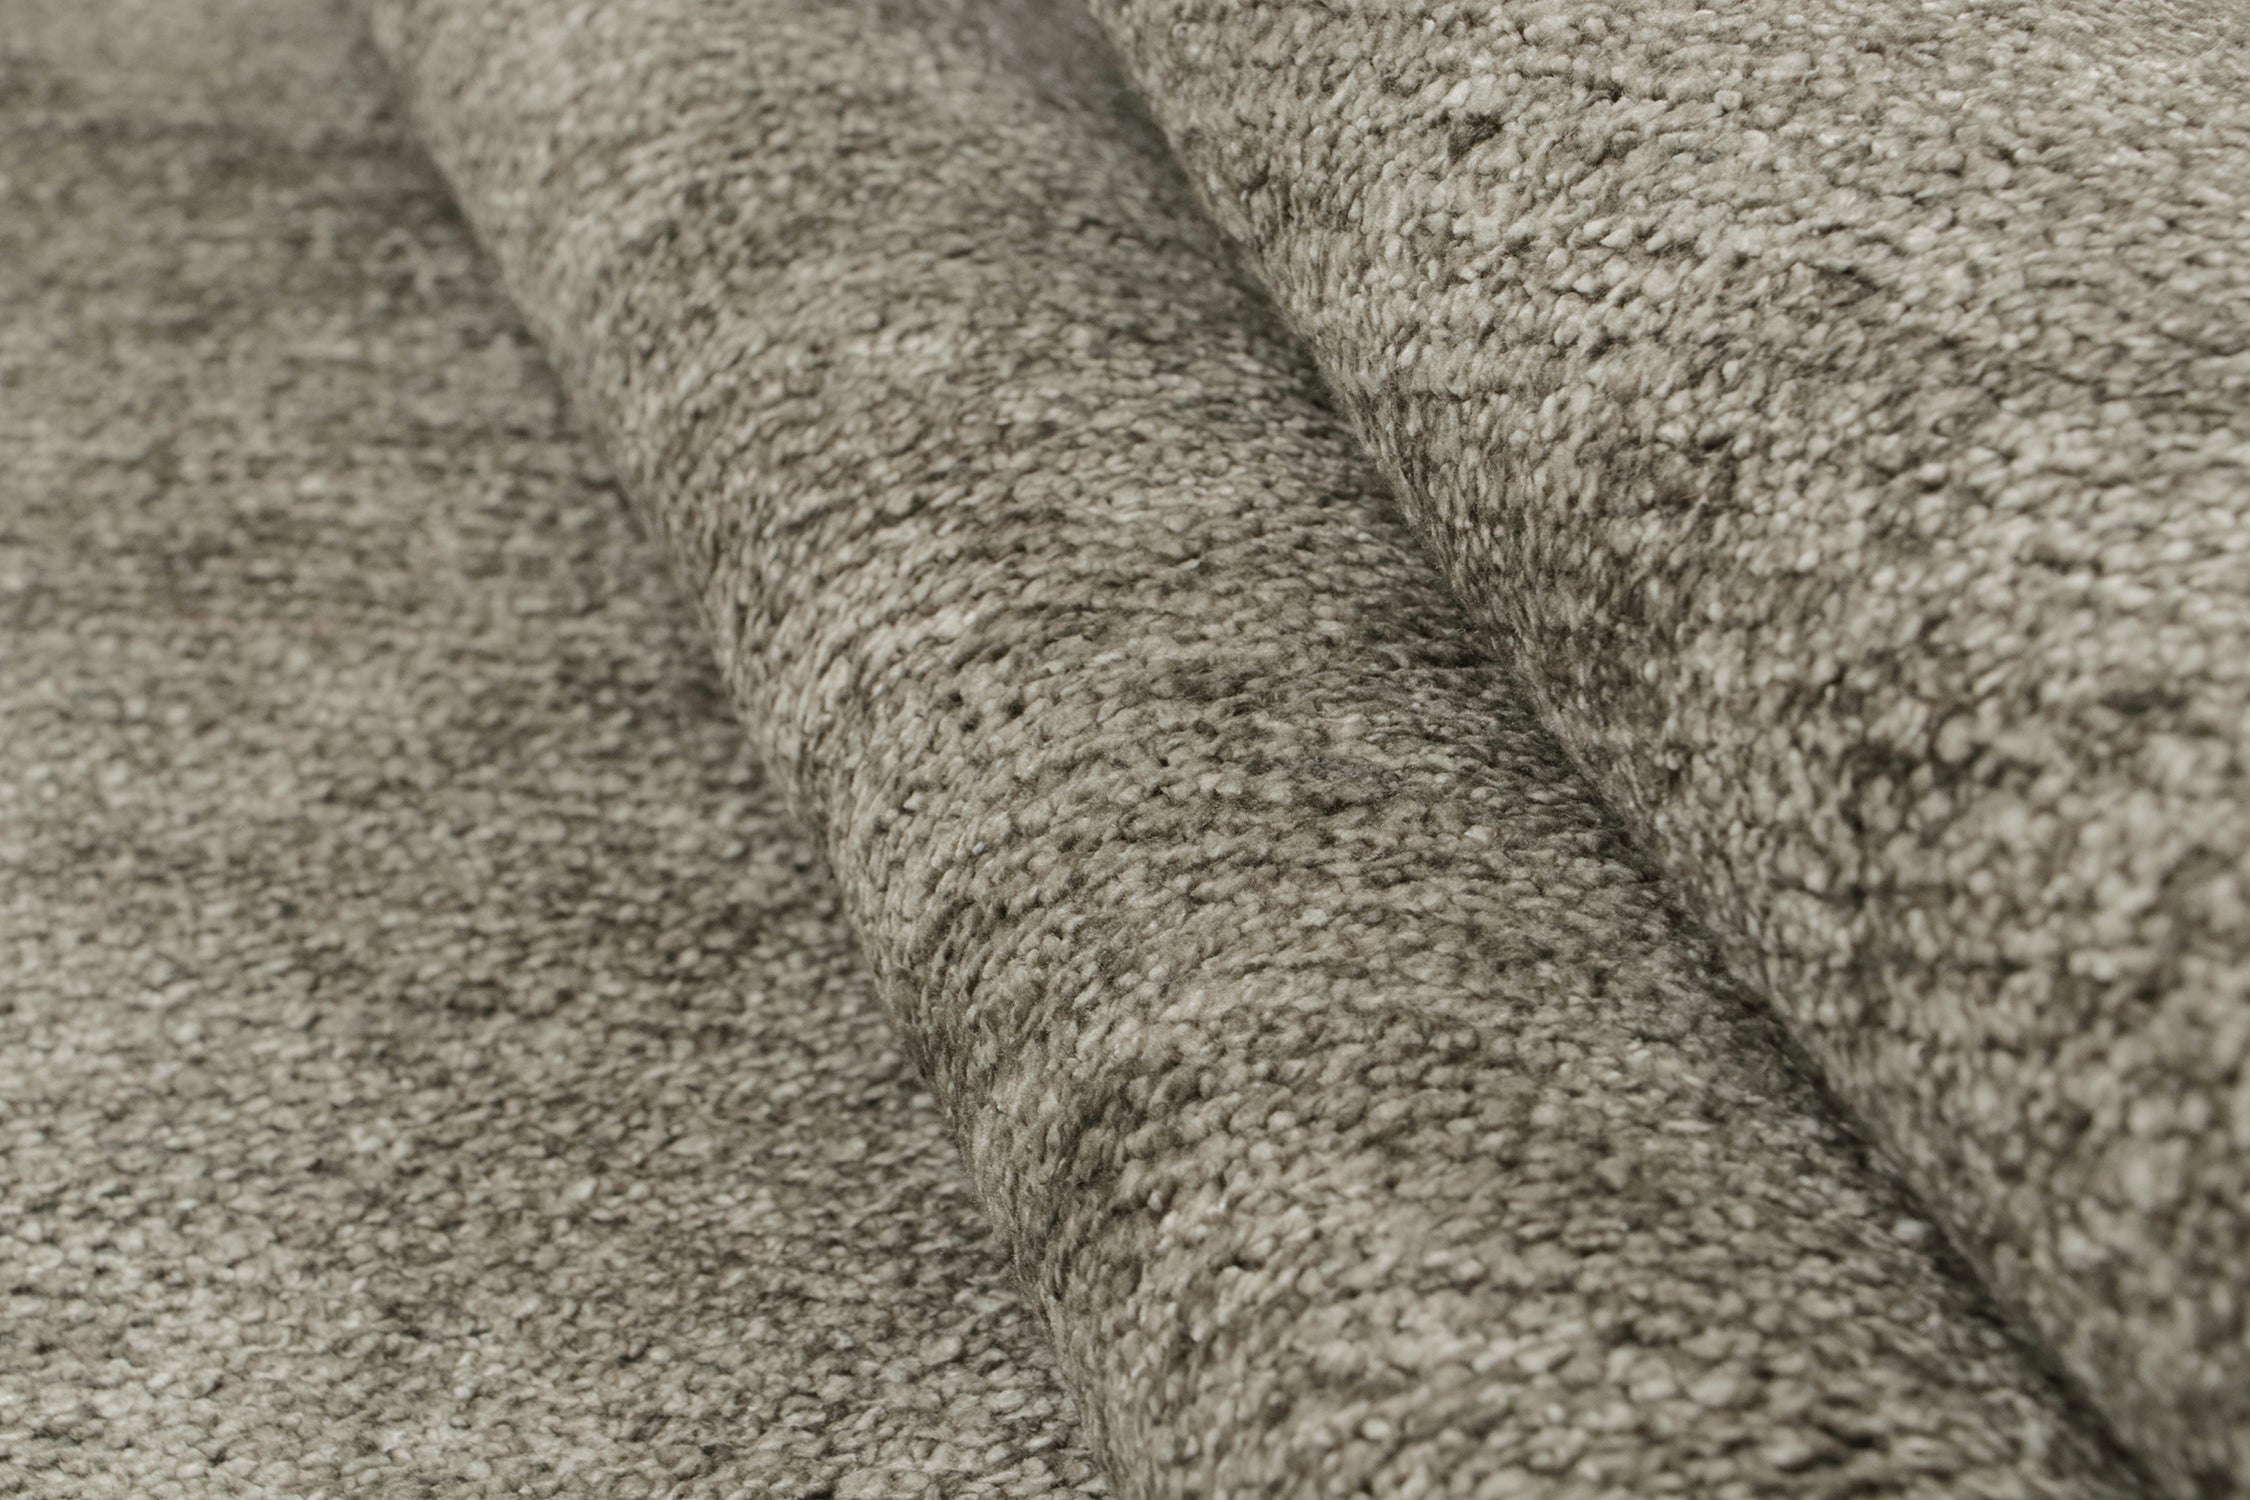 Moderner Teppich von Rug & Kilim in massivem silber-grauem Ton-in-Ton-Streifendesign